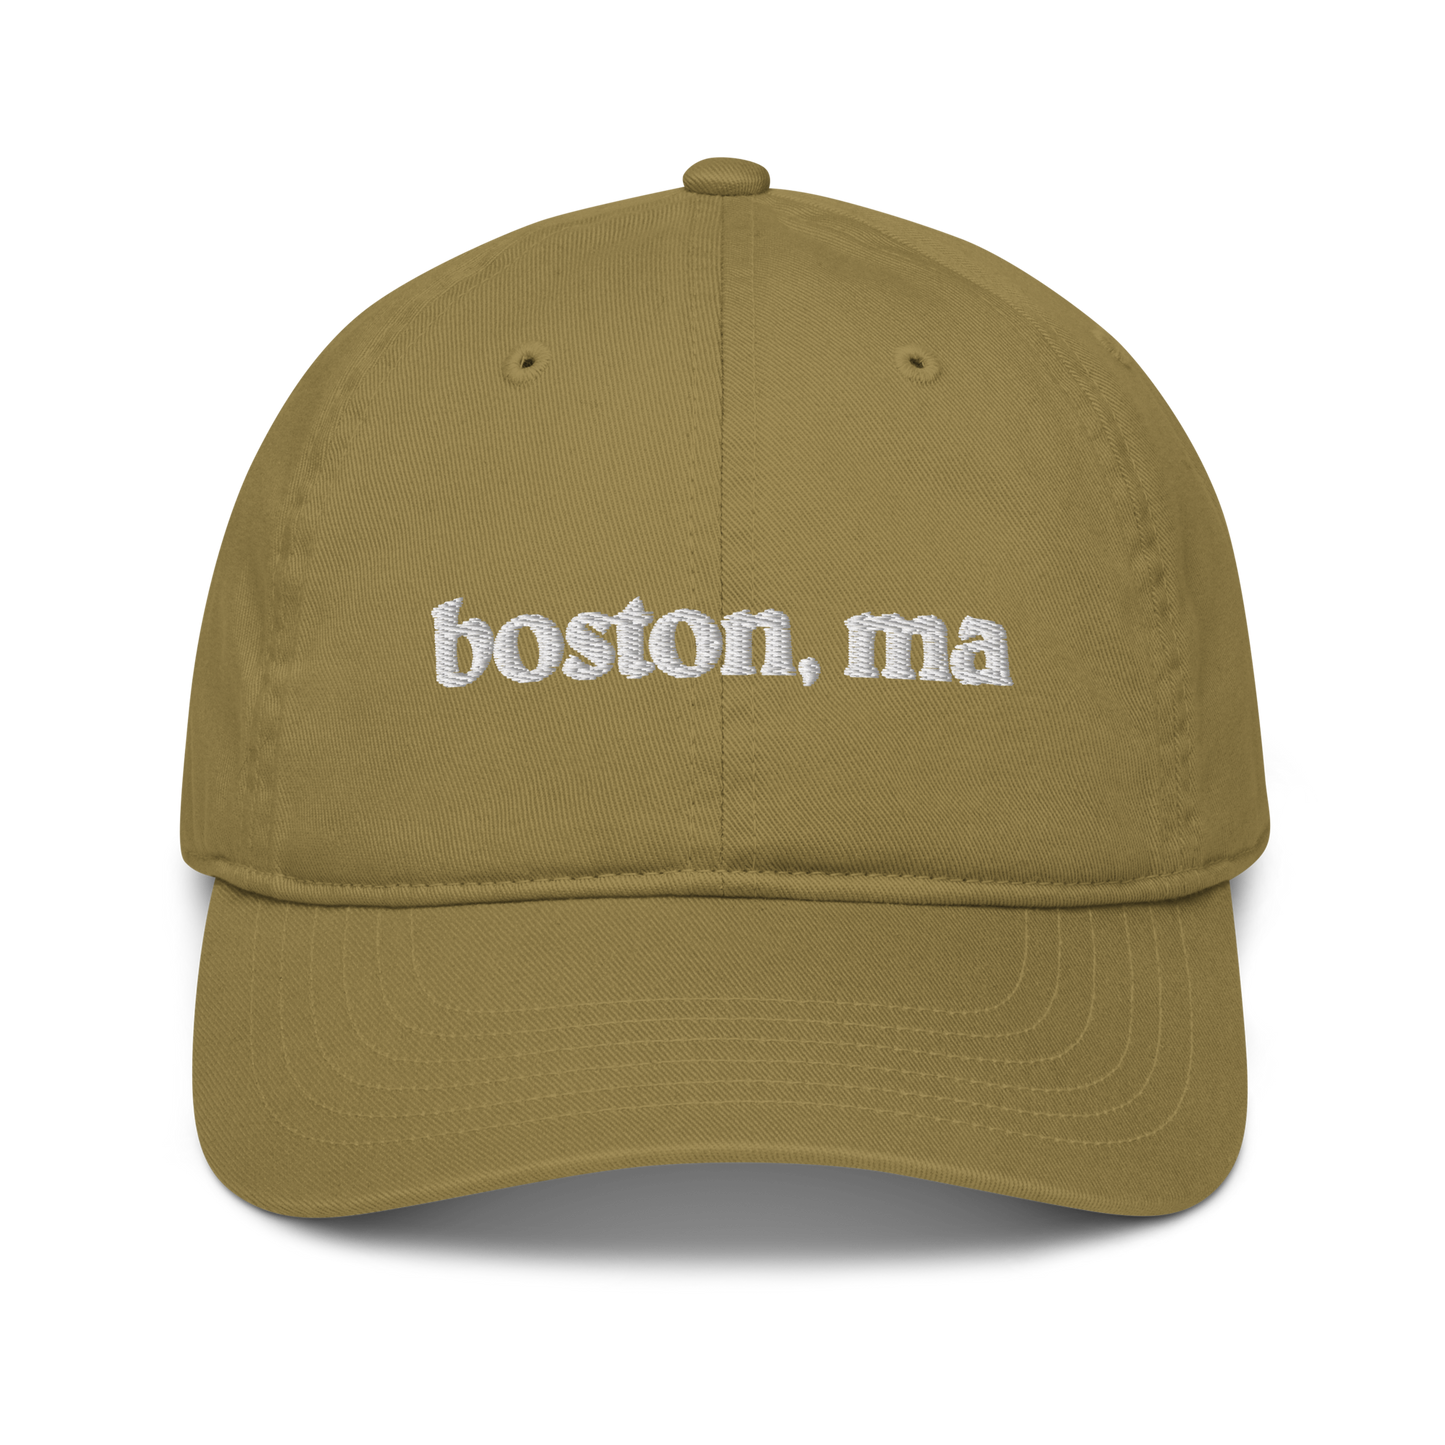 Boston, MA Dad Hat